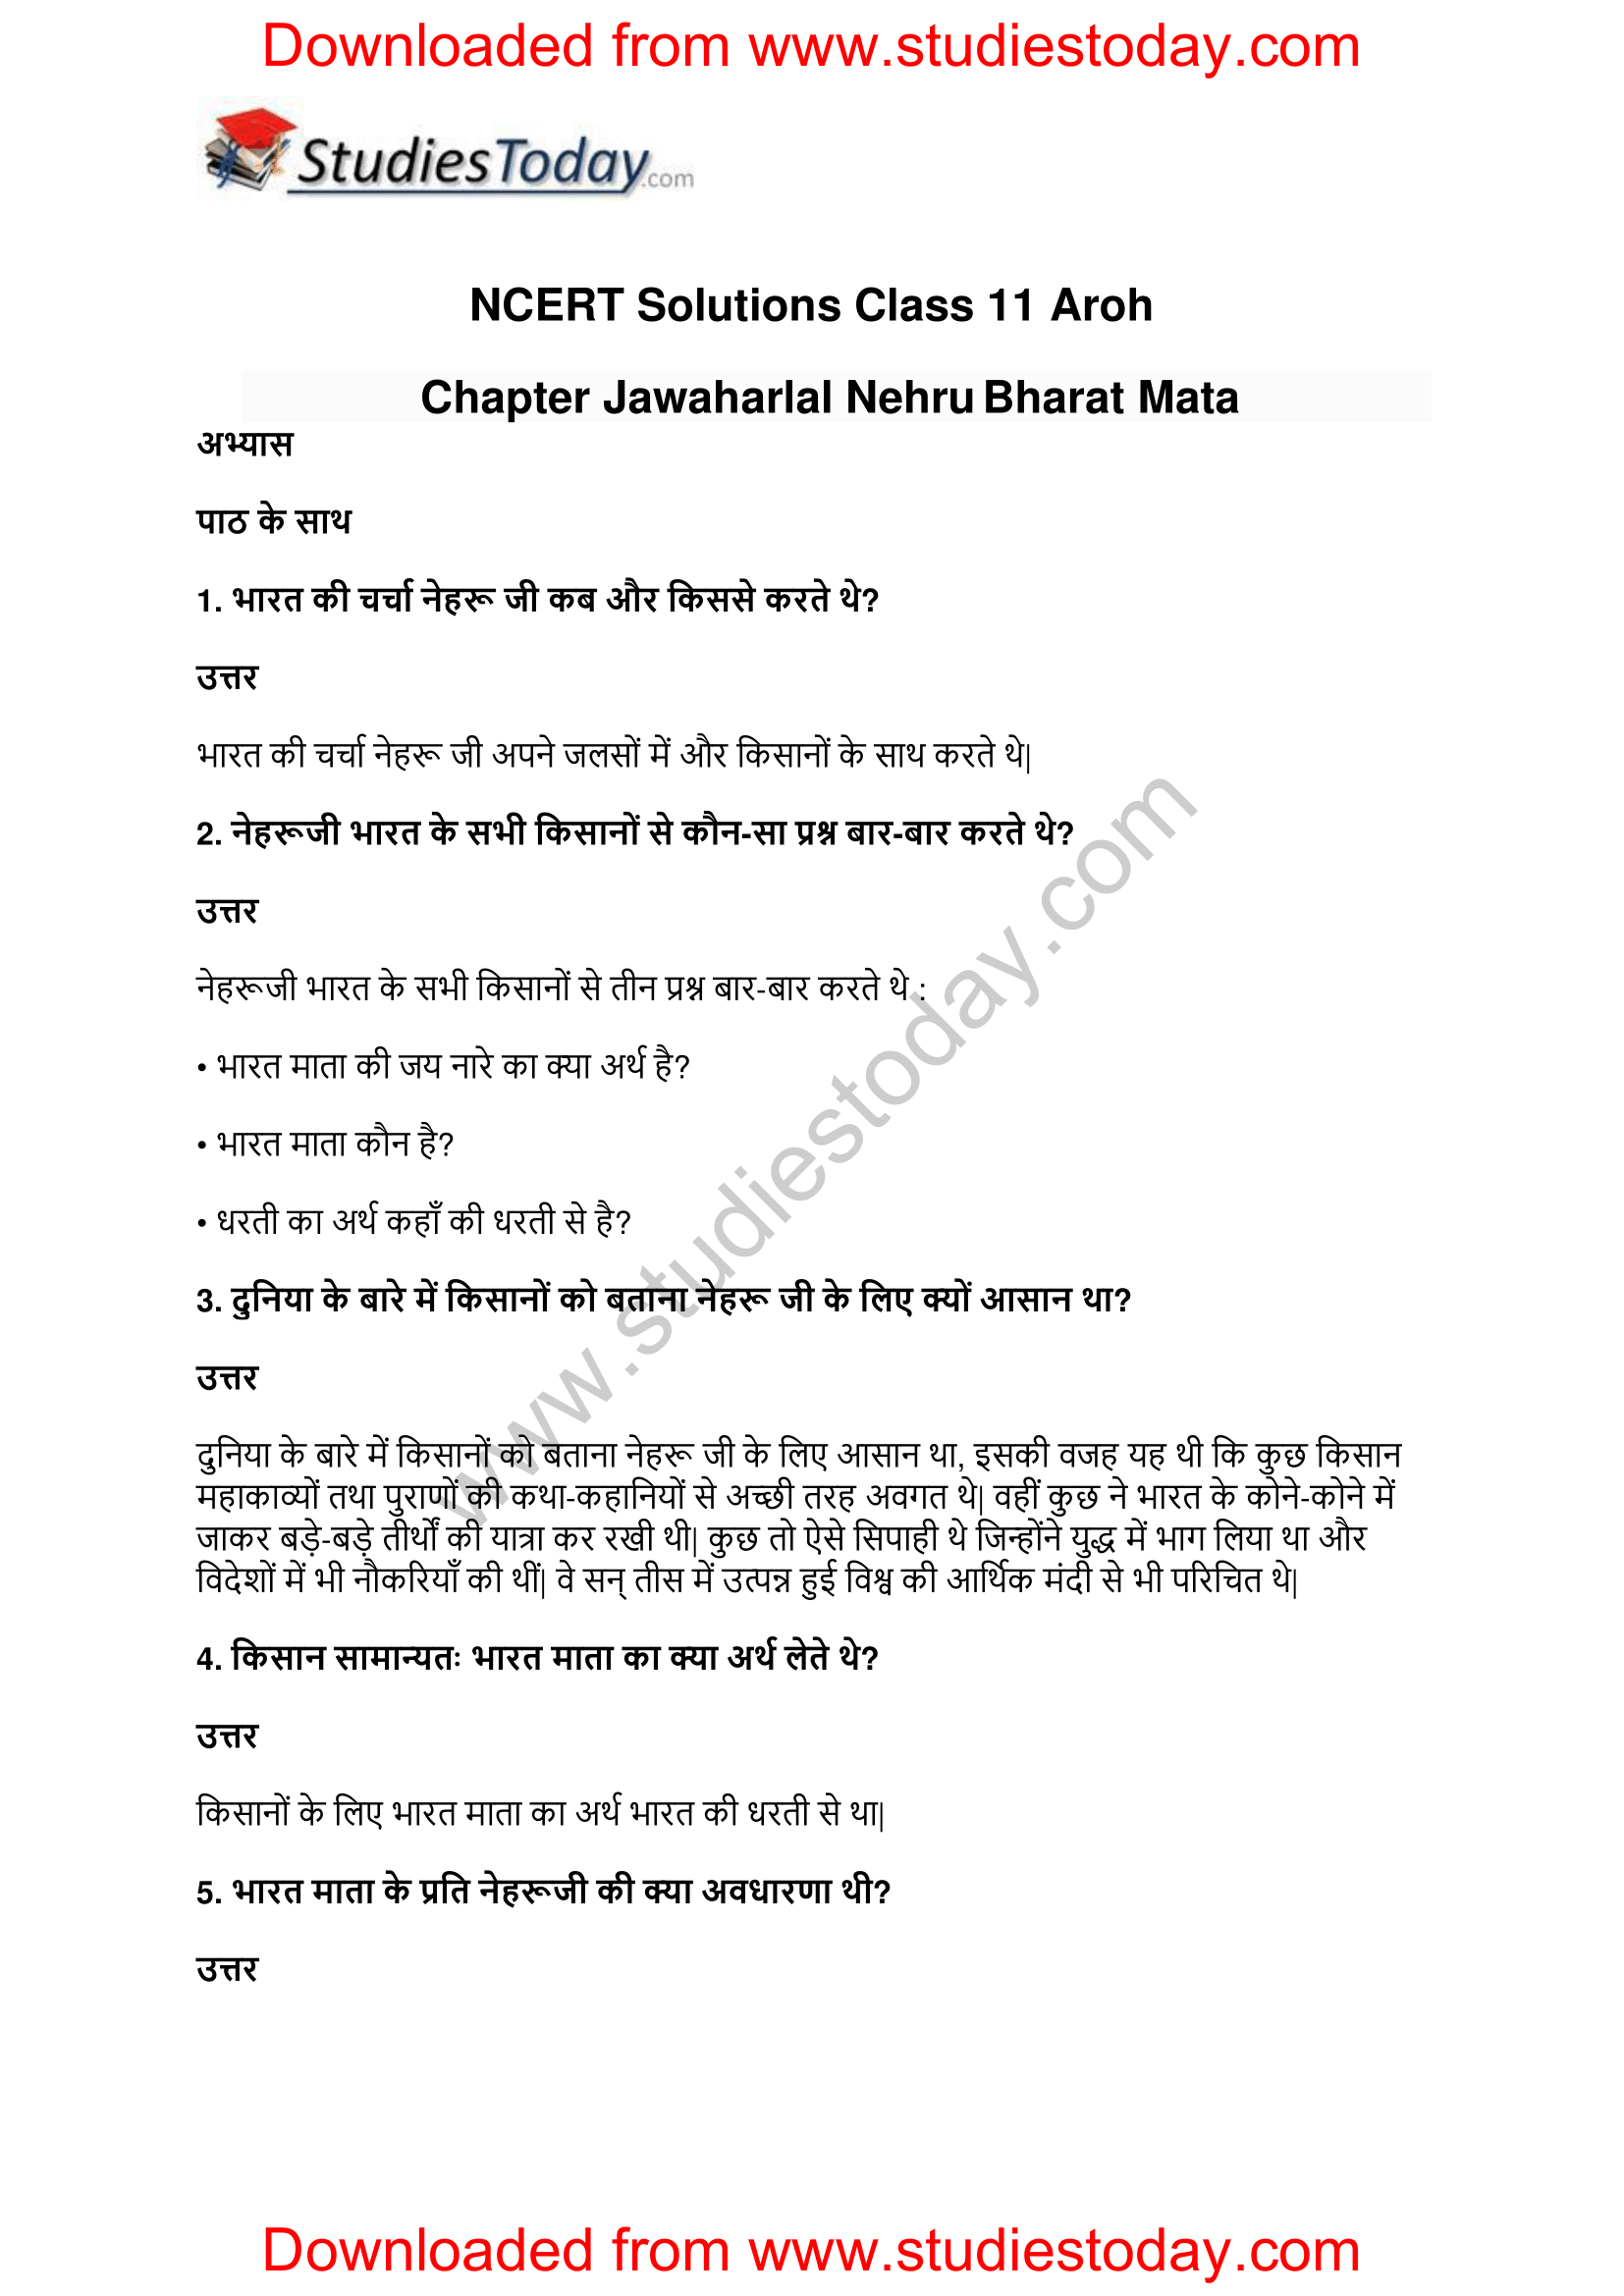 NCERT-Solutions-Class-11-Hindi-Aroh-Jawaharlal-Nehru-1